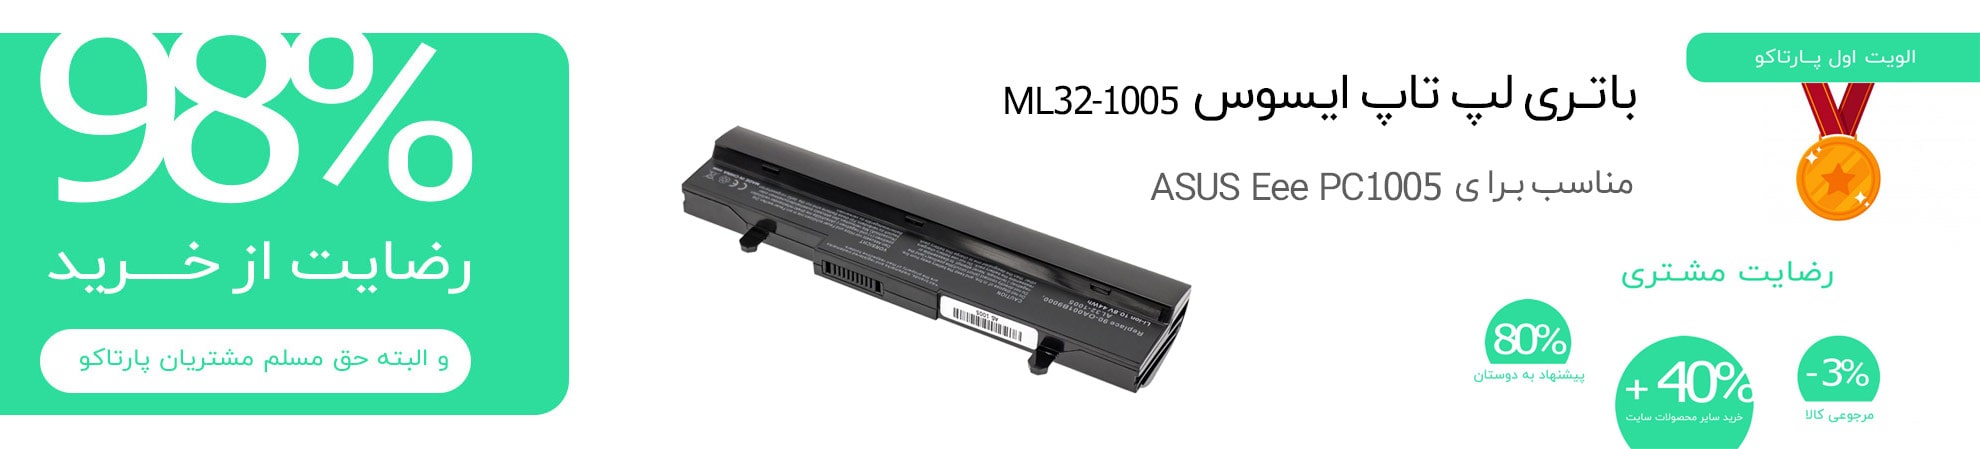 باتری ML32-1005